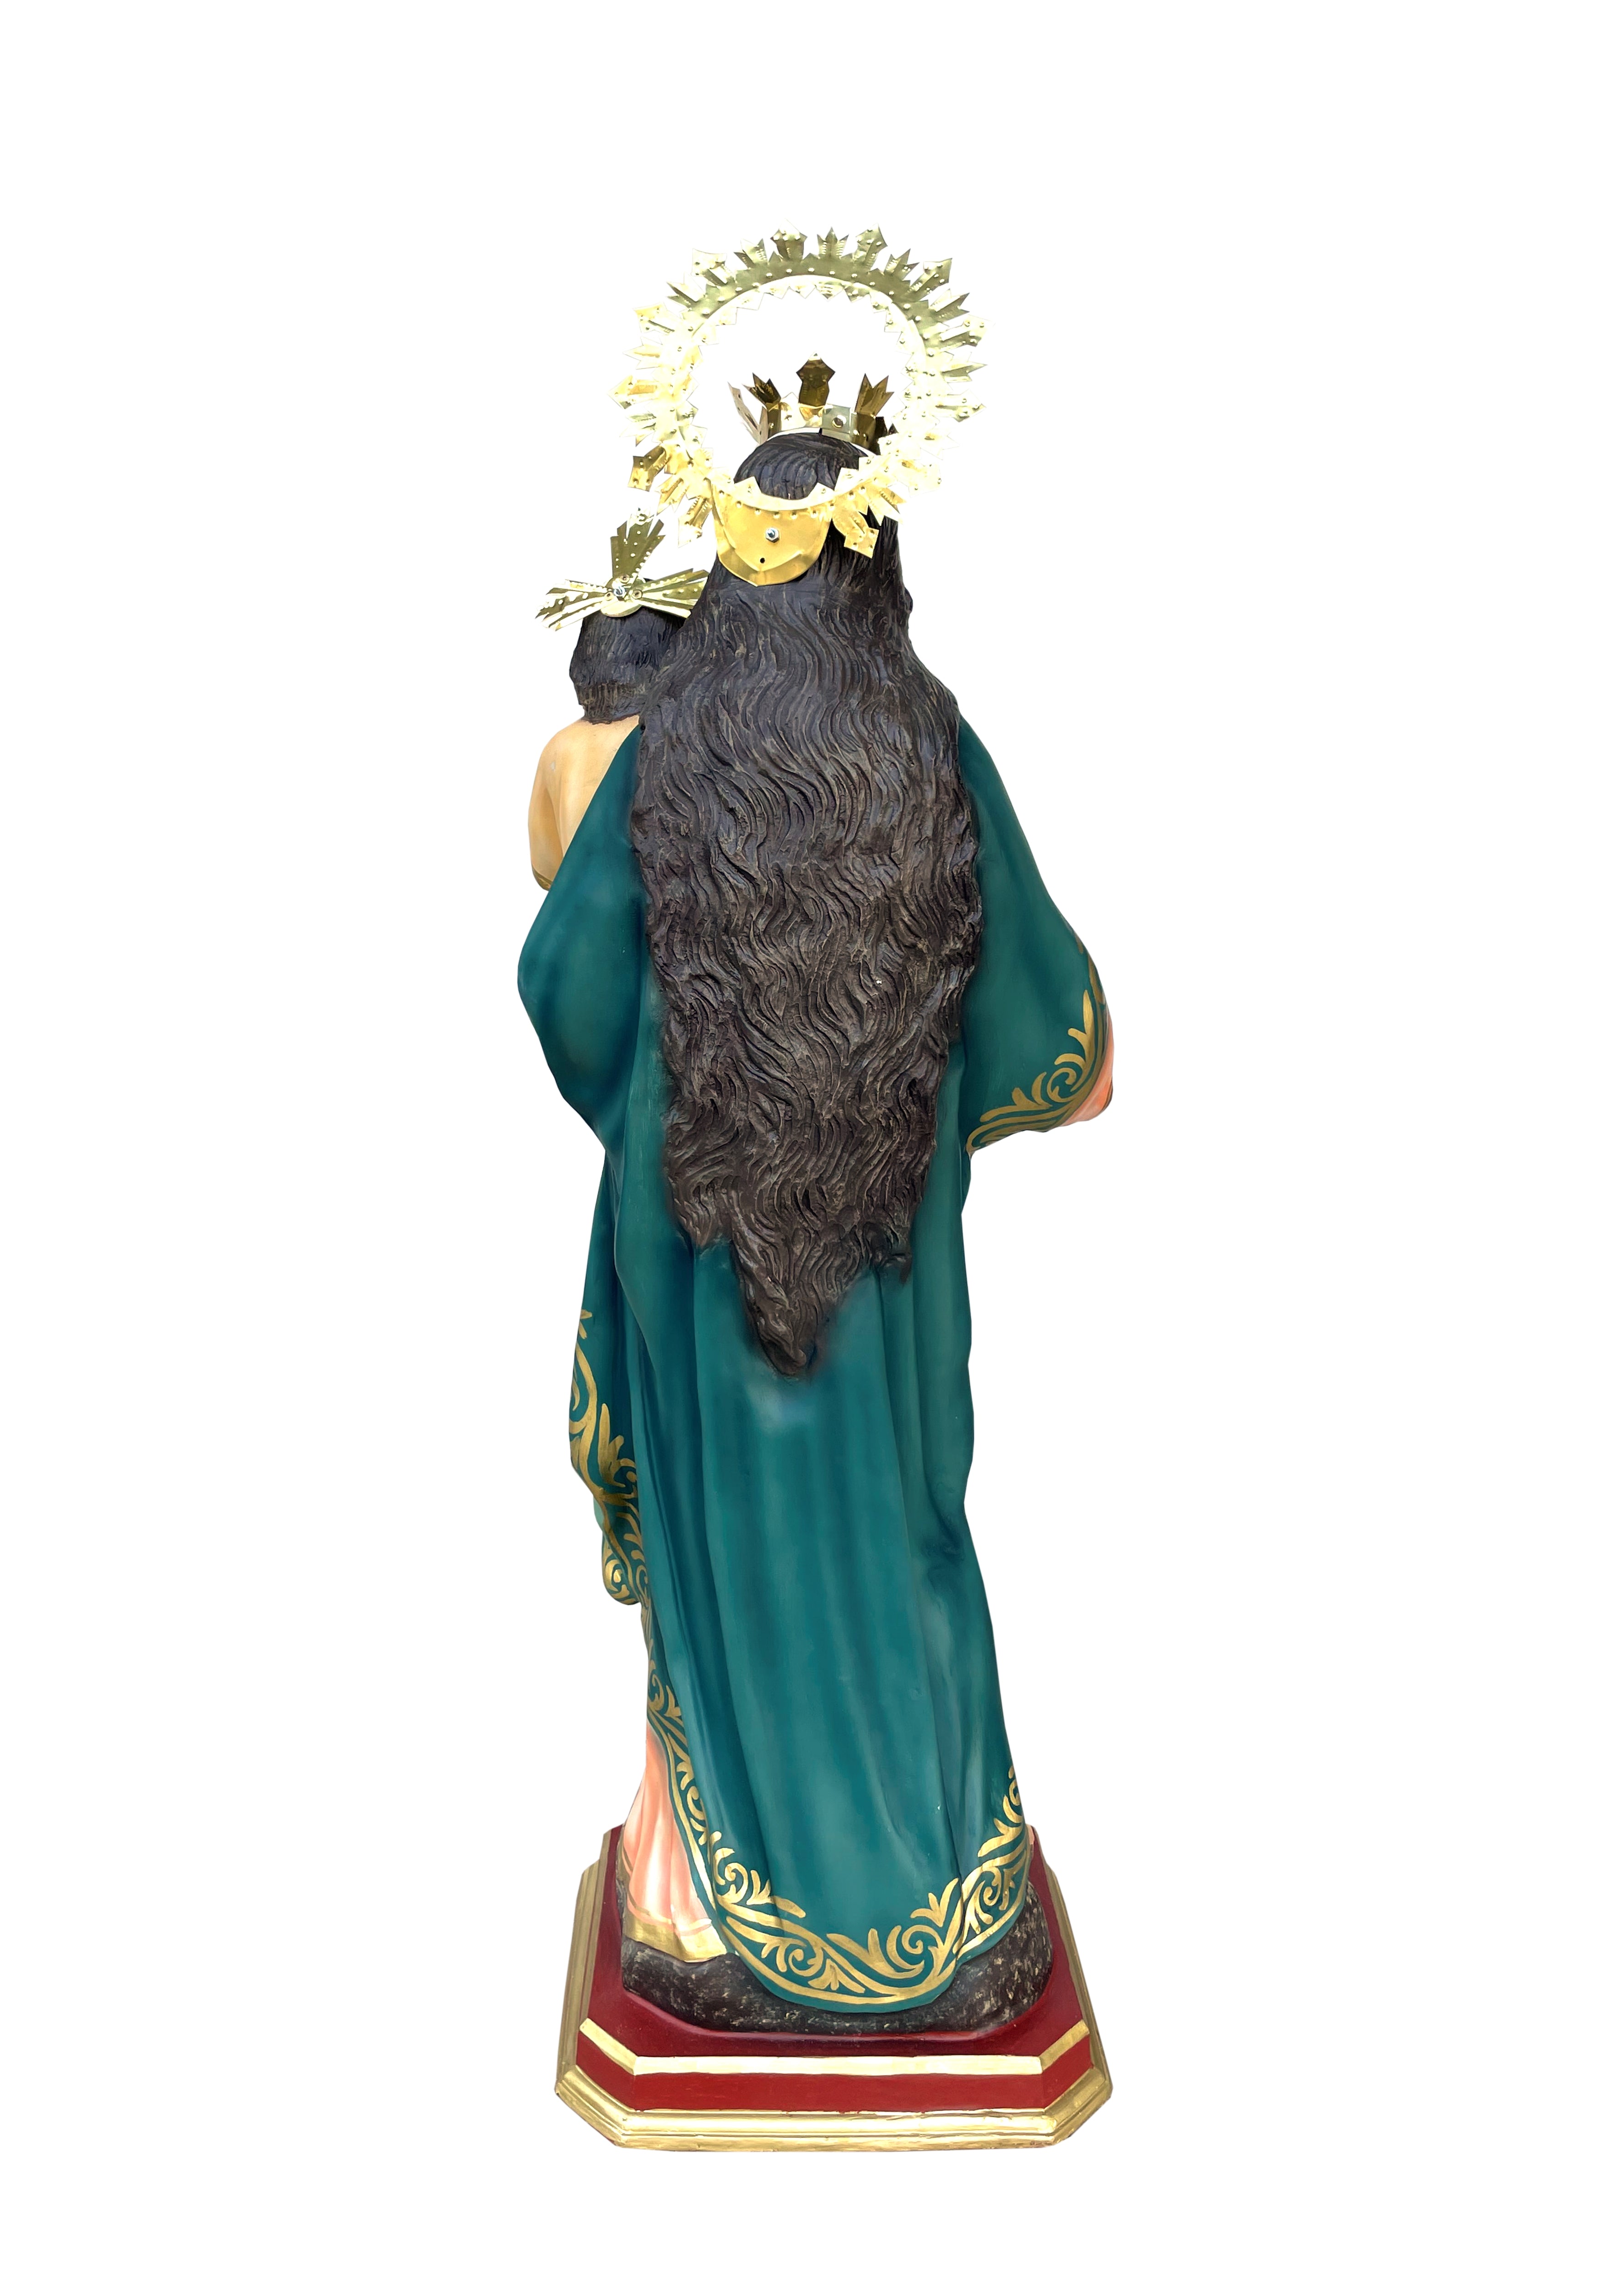 46" Mary Help of Christians Indoor and Outdoor Statue / Imagen de María Auxiliadora de 46" para Interiores y Exteriores